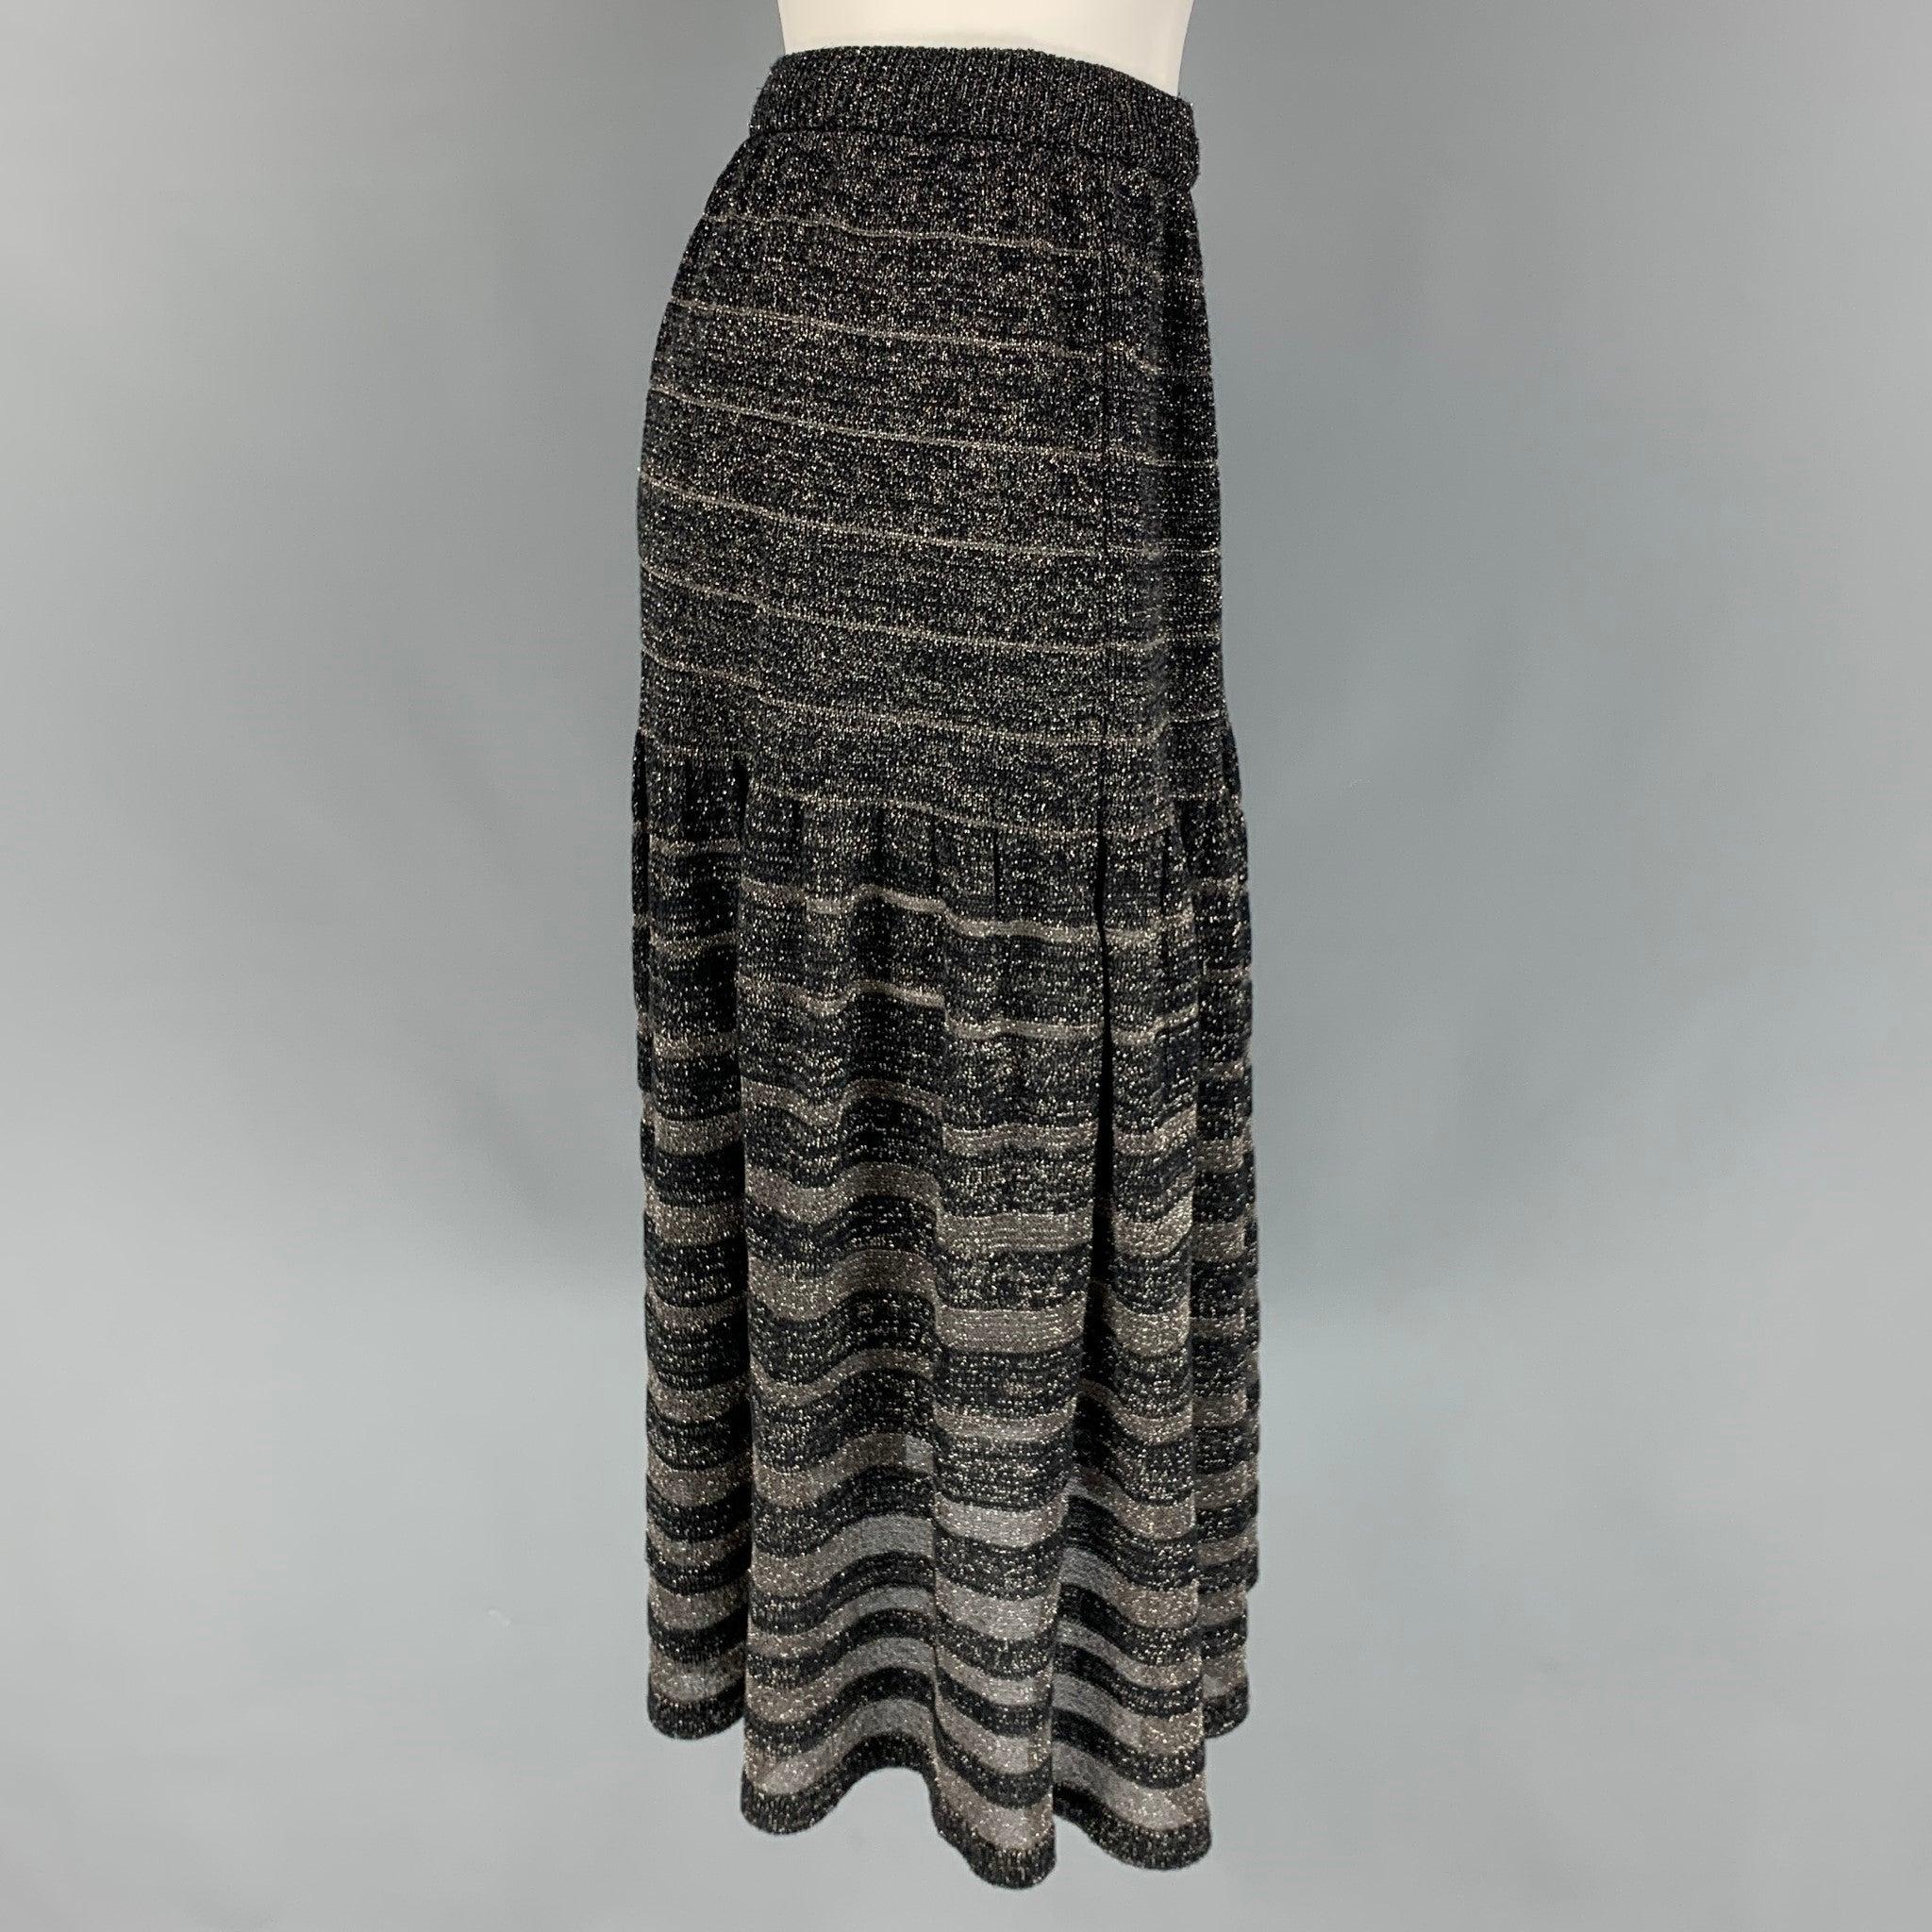 La jupe KENZO est réalisée en acrylique mélangé noir et argenté. Elle présente une longueur mi-mollet, une ligne aplatie et une taille élastique.
Très bien
Etat d'occasion. 

Marqué :   S 

Mesures : 
  Taille : 25 pouces  Hanche :
34 pouces 